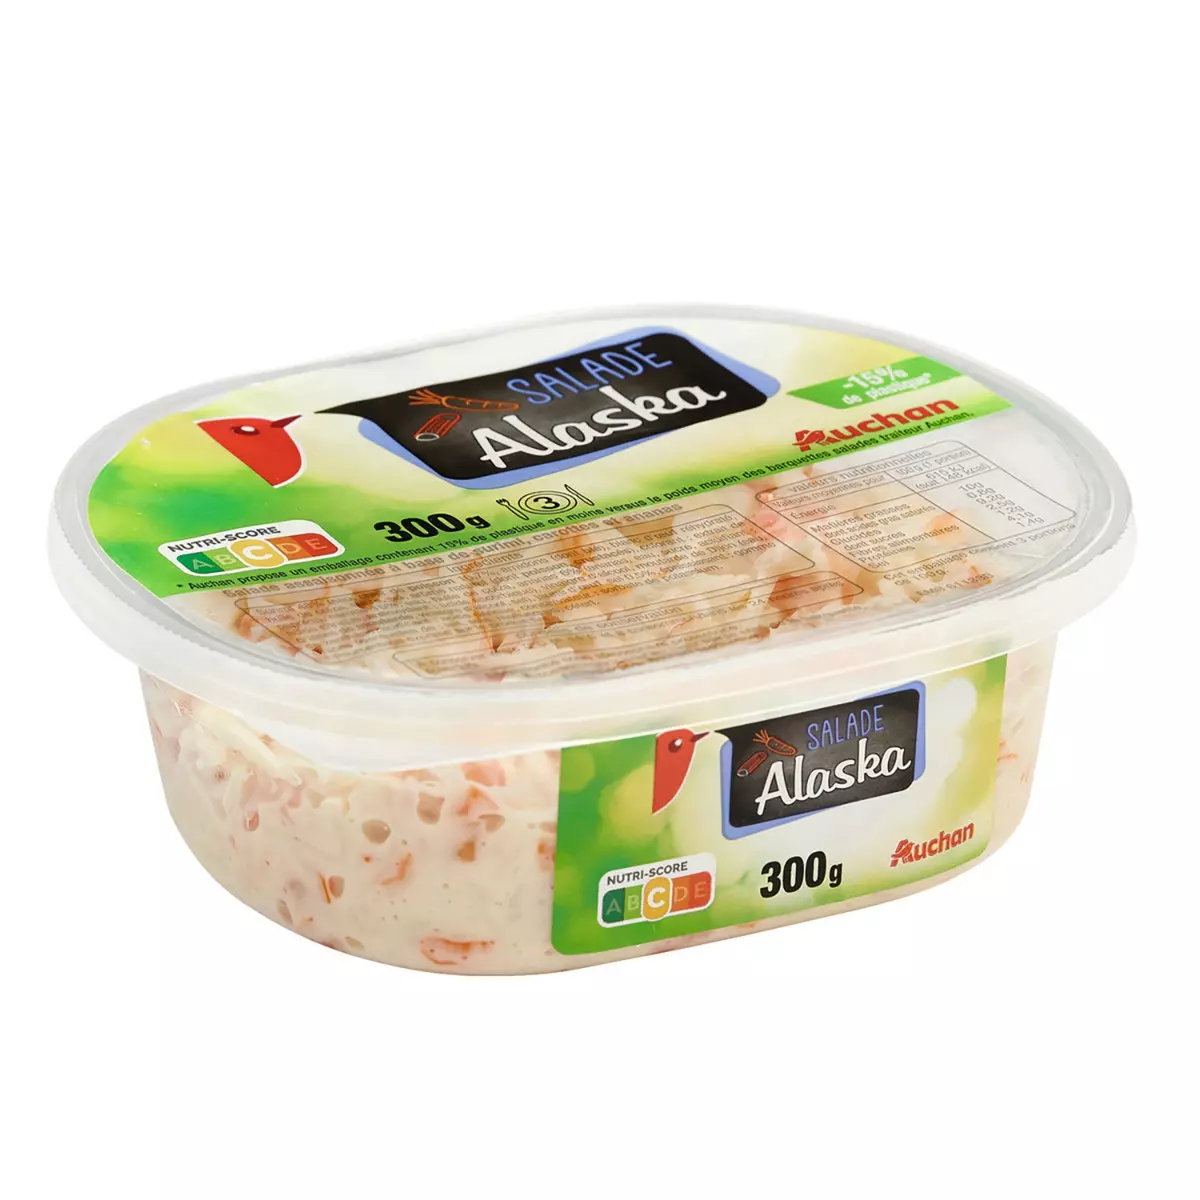 AUCHAN Salade Alaska au surimi carottes et ananas 300g